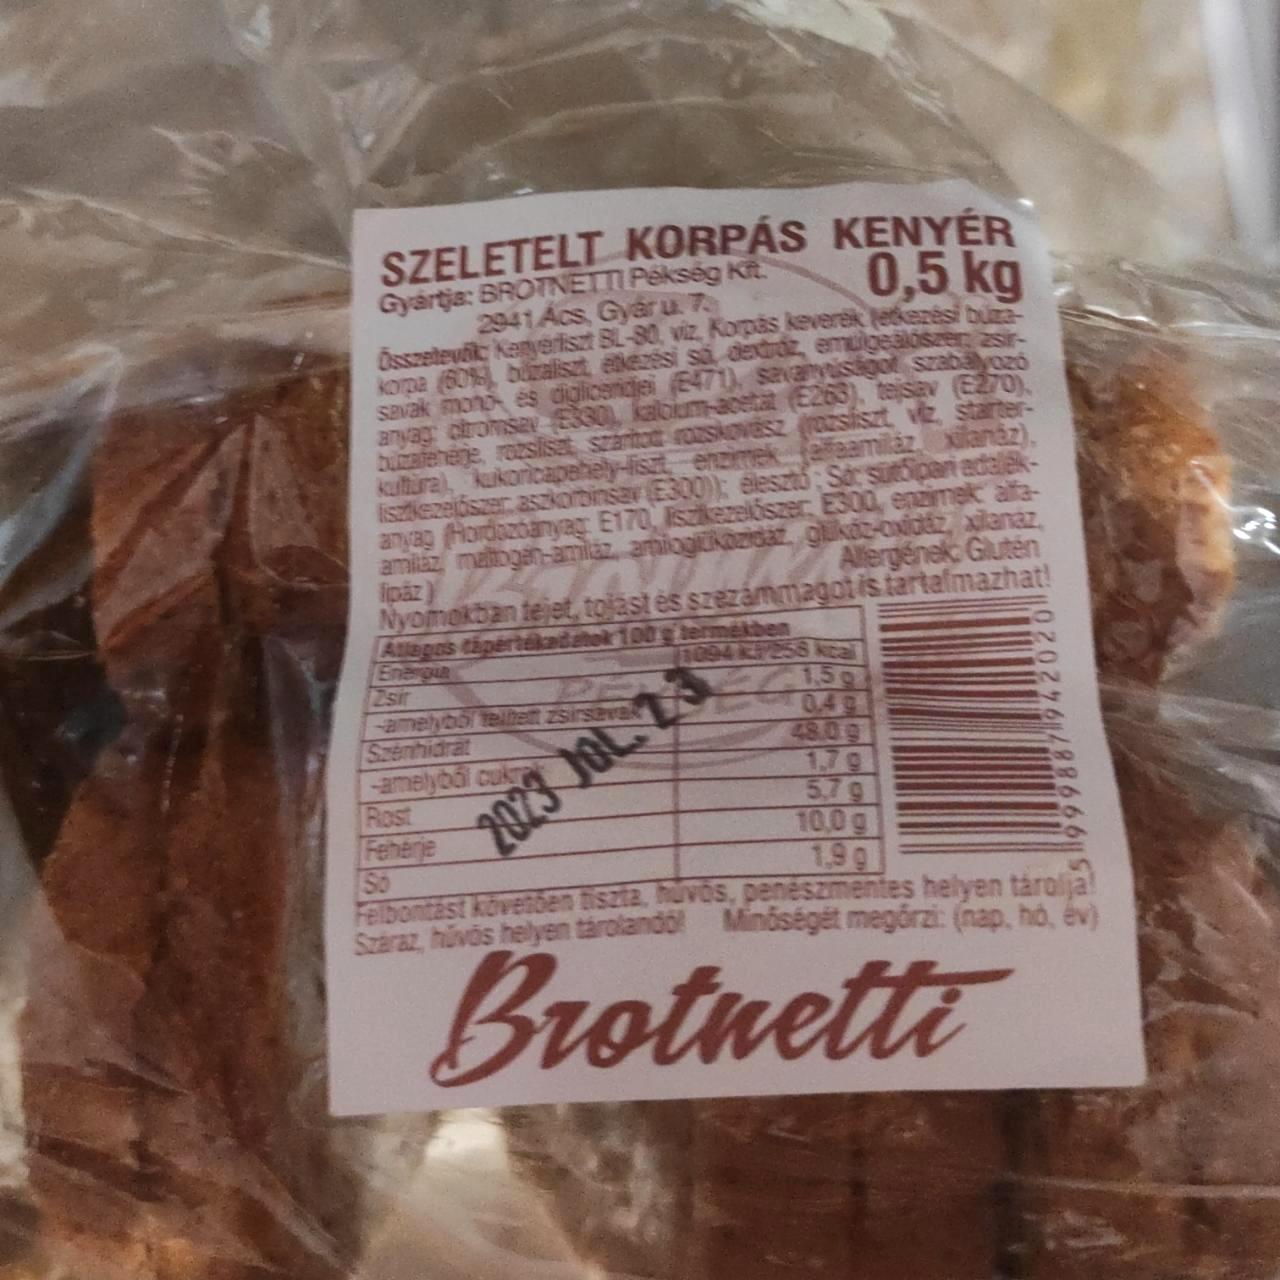 Képek - Szeletelt korpás kenyér Brotnetti